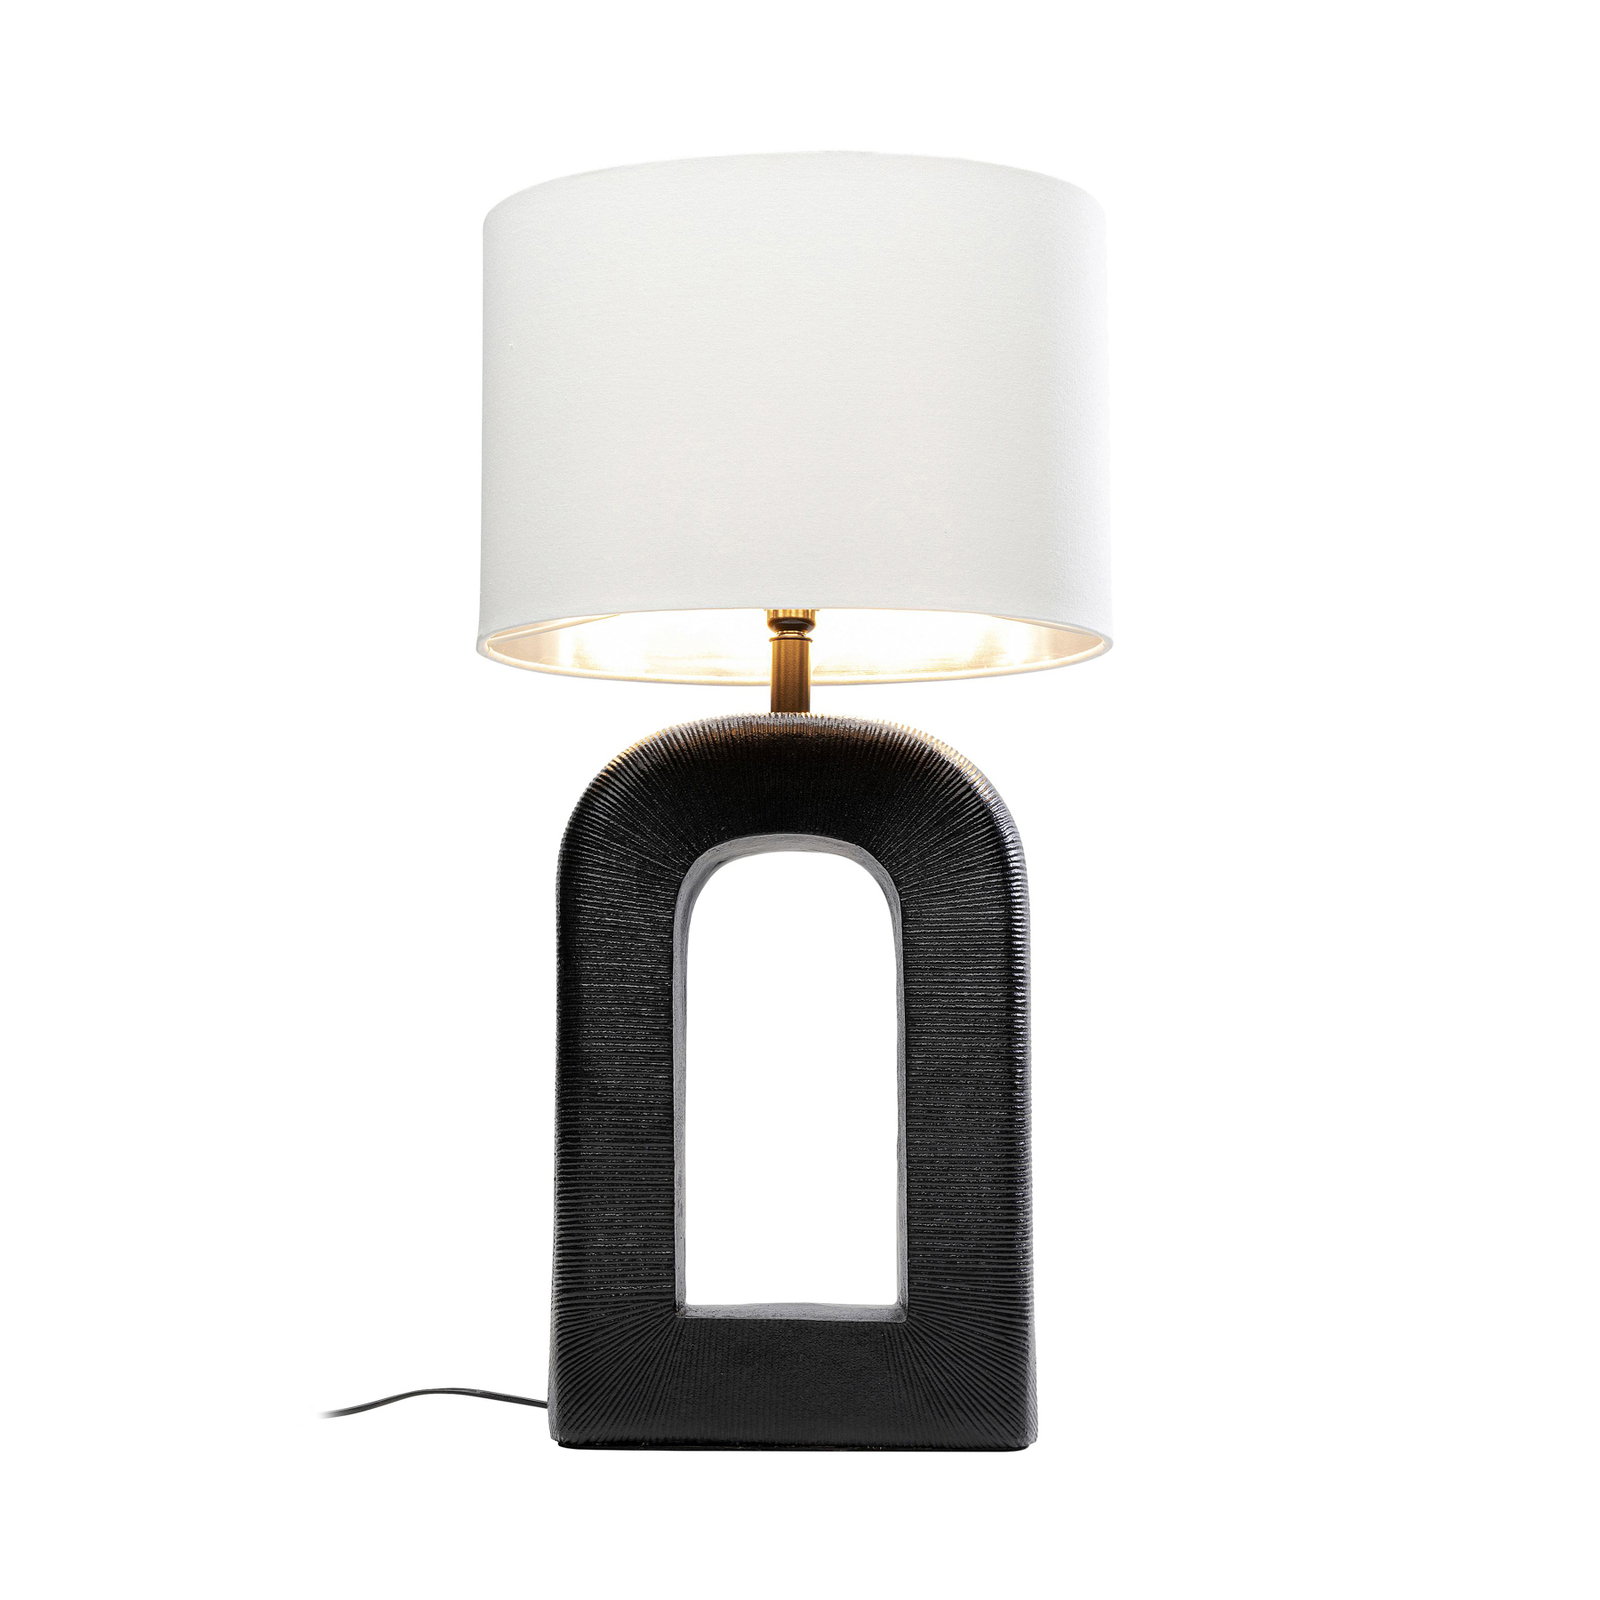 KARE Tube bordslampa, svart/vit, linnetextil, höjd 79 cm